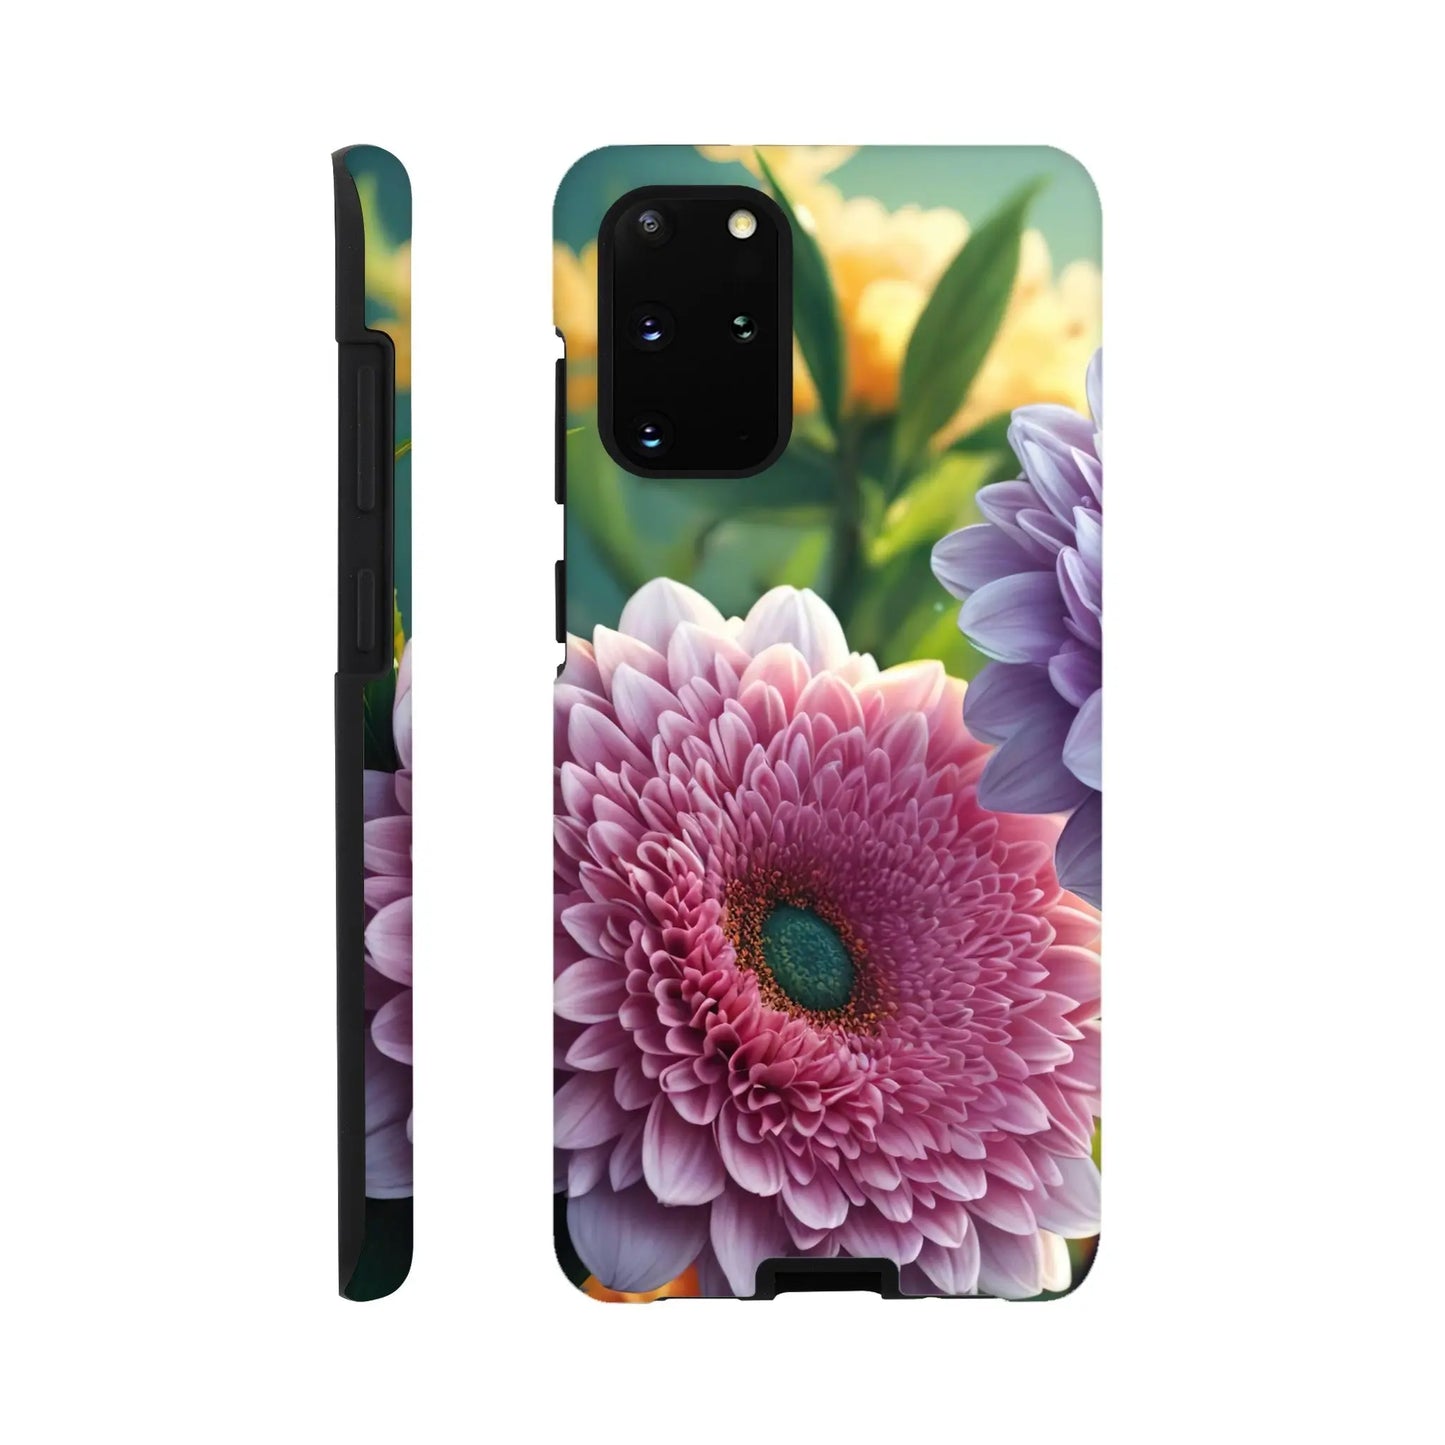 Smartphone-Hülle "Hart" - Blumen Vielfalt - Foto Stil, KI-Kunst, Pflanzen, Galaxy-S20-Plus - RolConArt